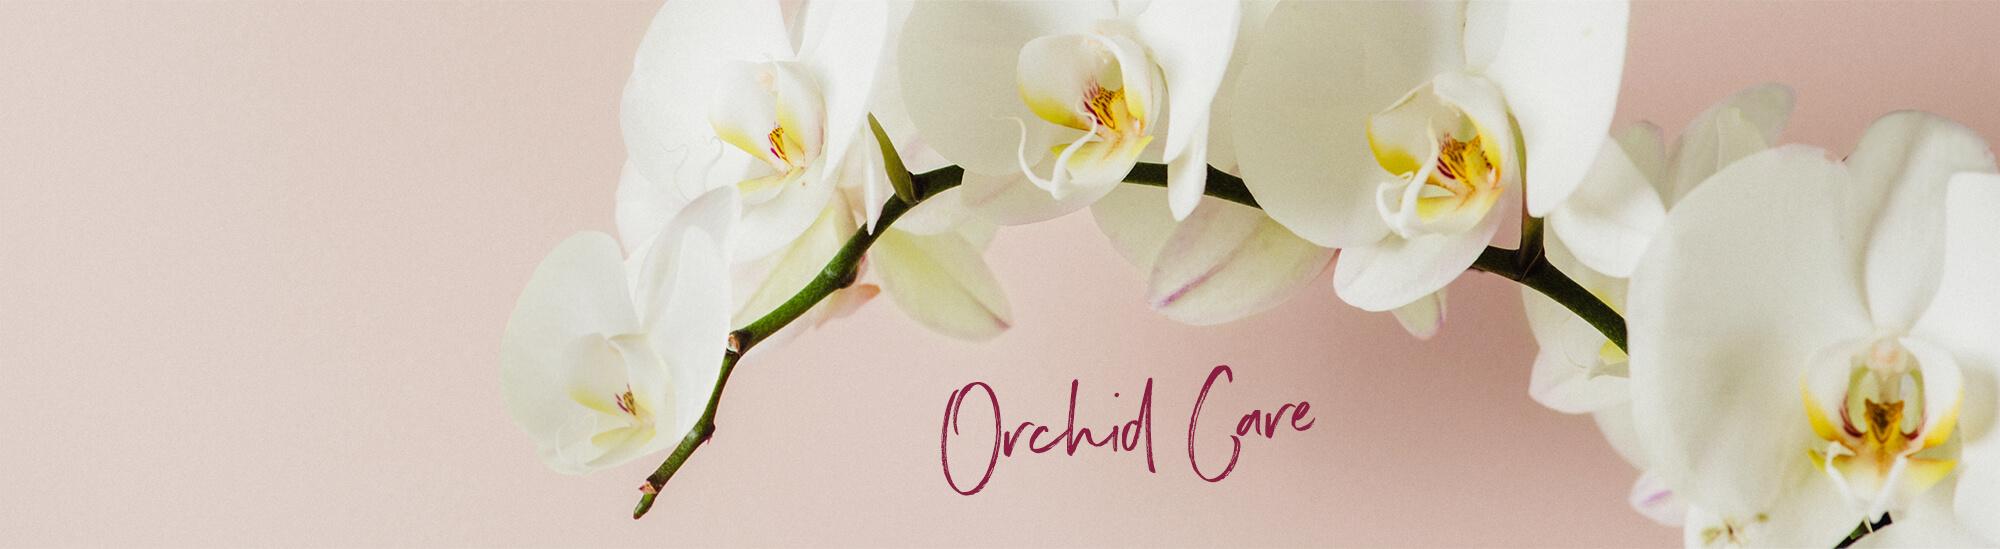 Tips en tricks voor de verzorging van orchideeën